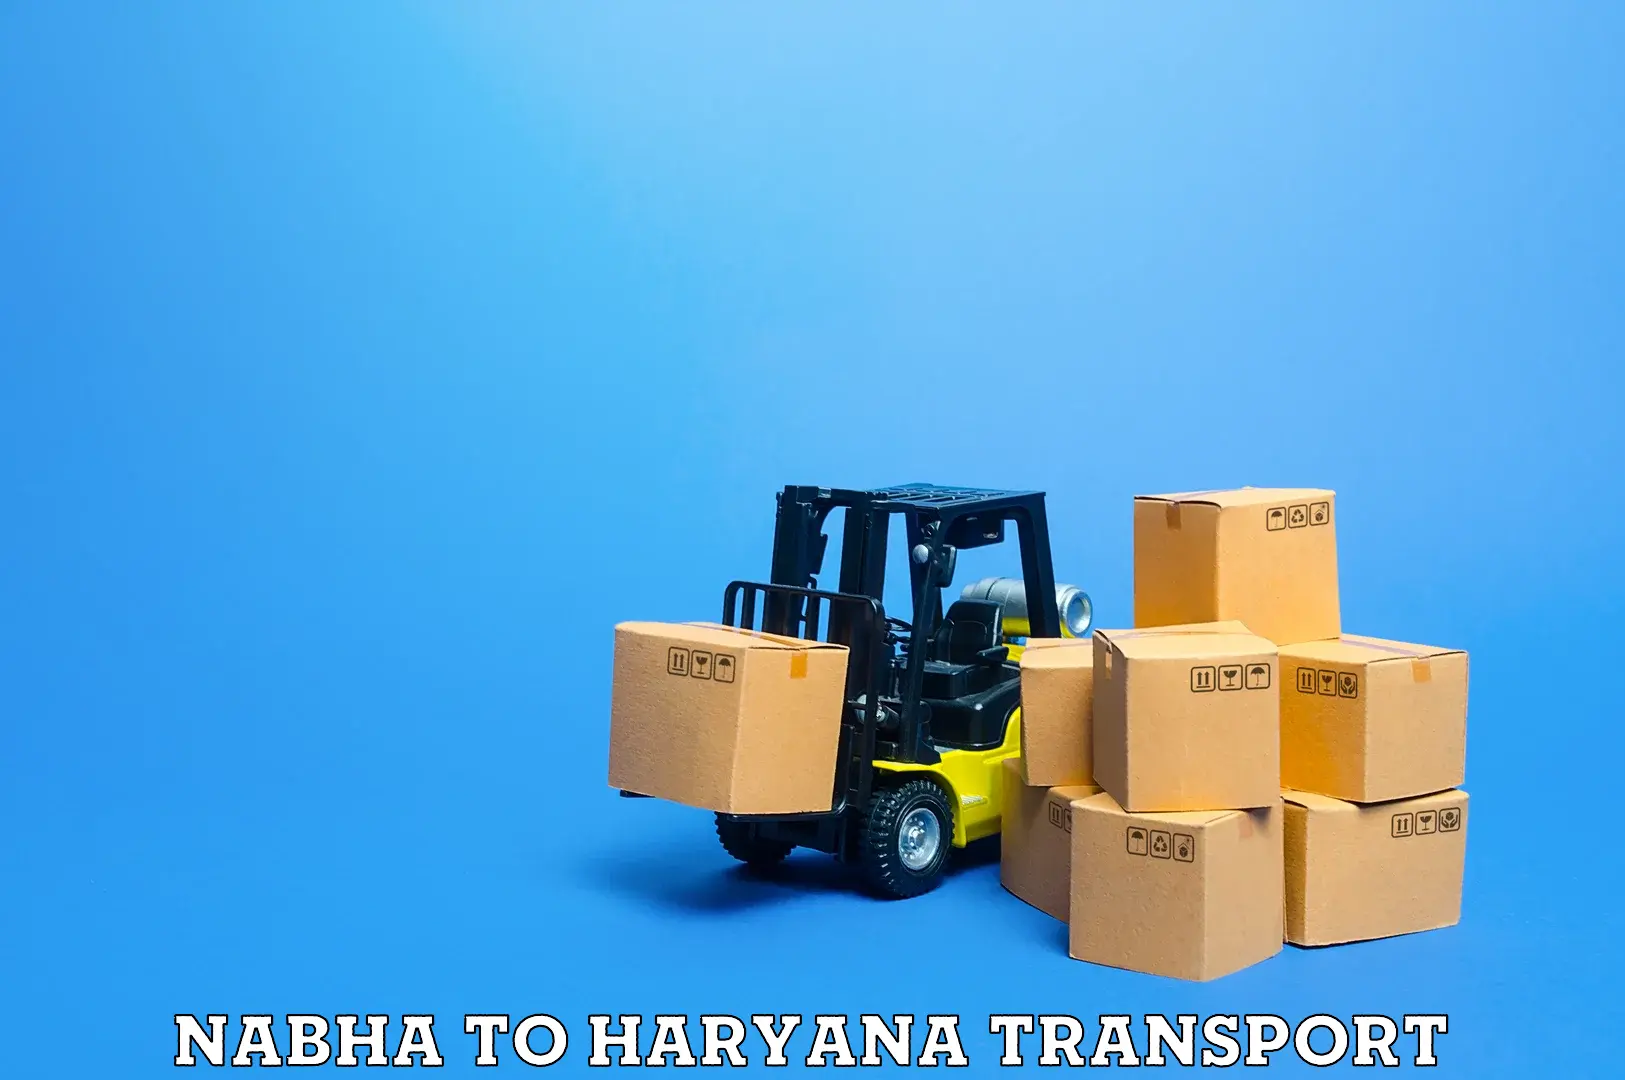 Bike shipping service Nabha to Kurukshetra